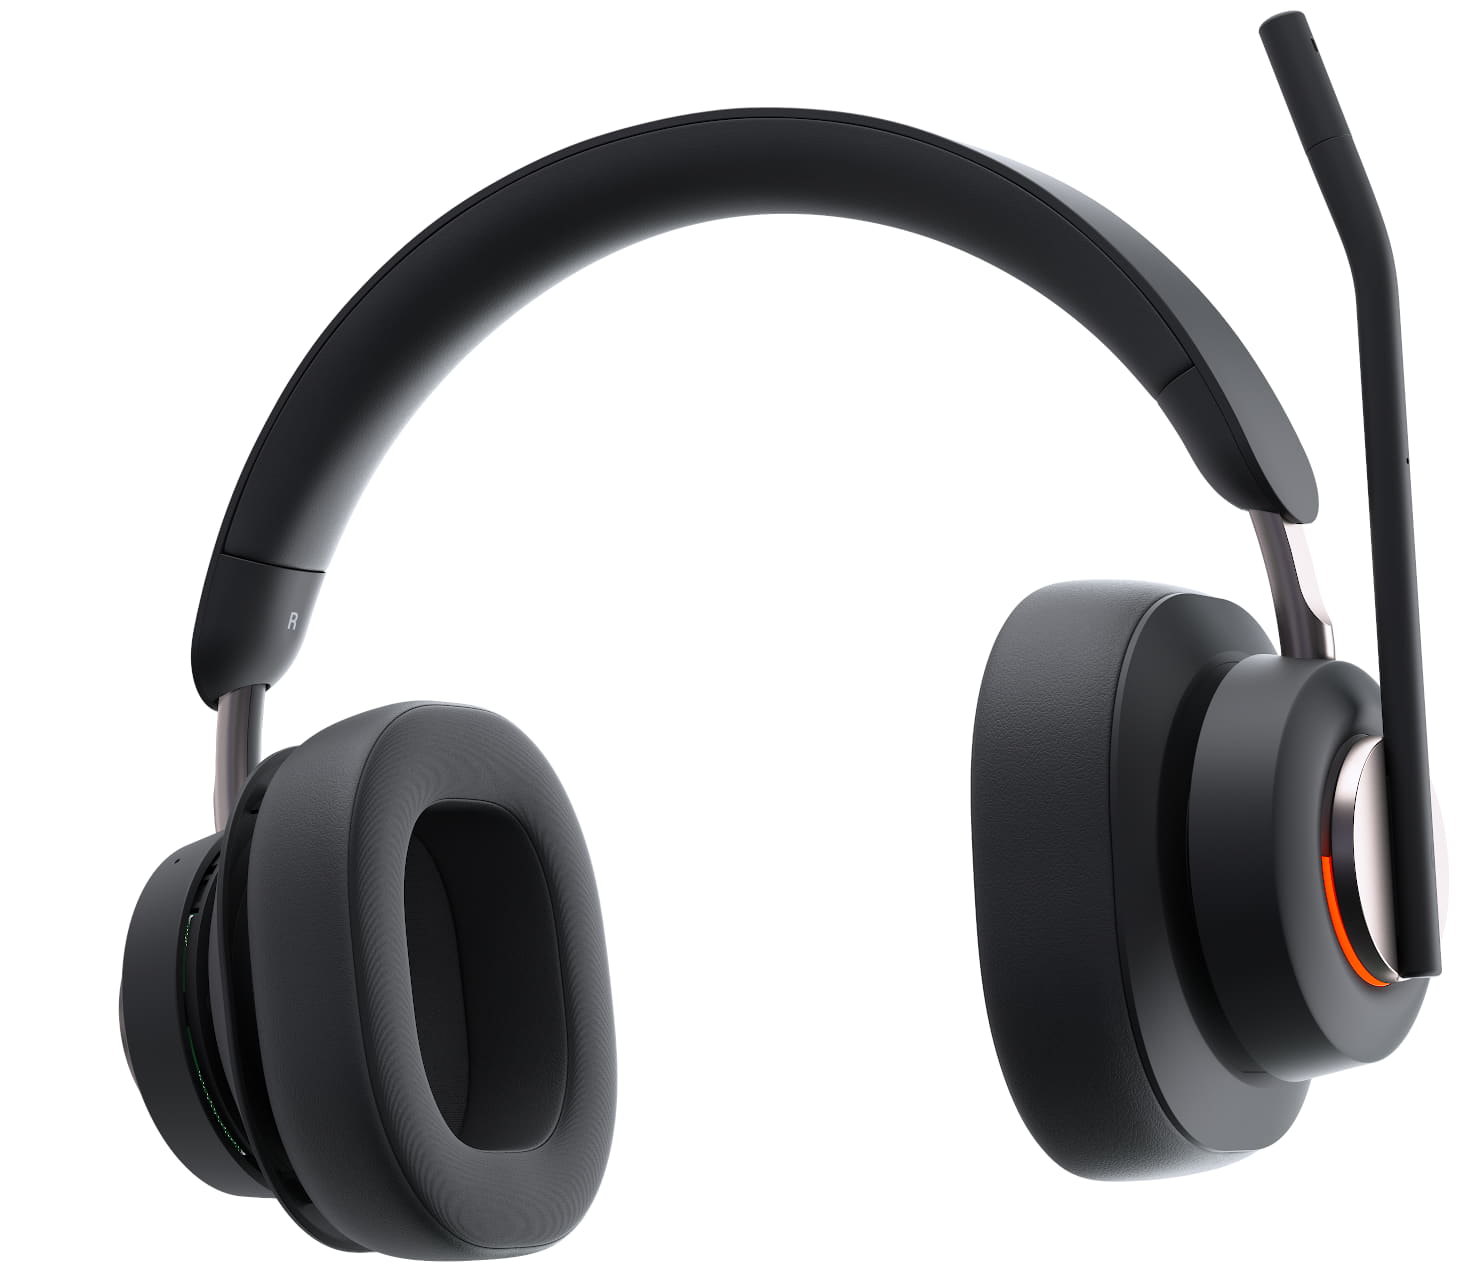 Närbild framifrån på Kensington H3000 Bluetooth Over-ear-headset med upptagetlampan tänd och mikrofonen i vänd för mute-position och höger öronkåpa expanderas för att visa tekniken